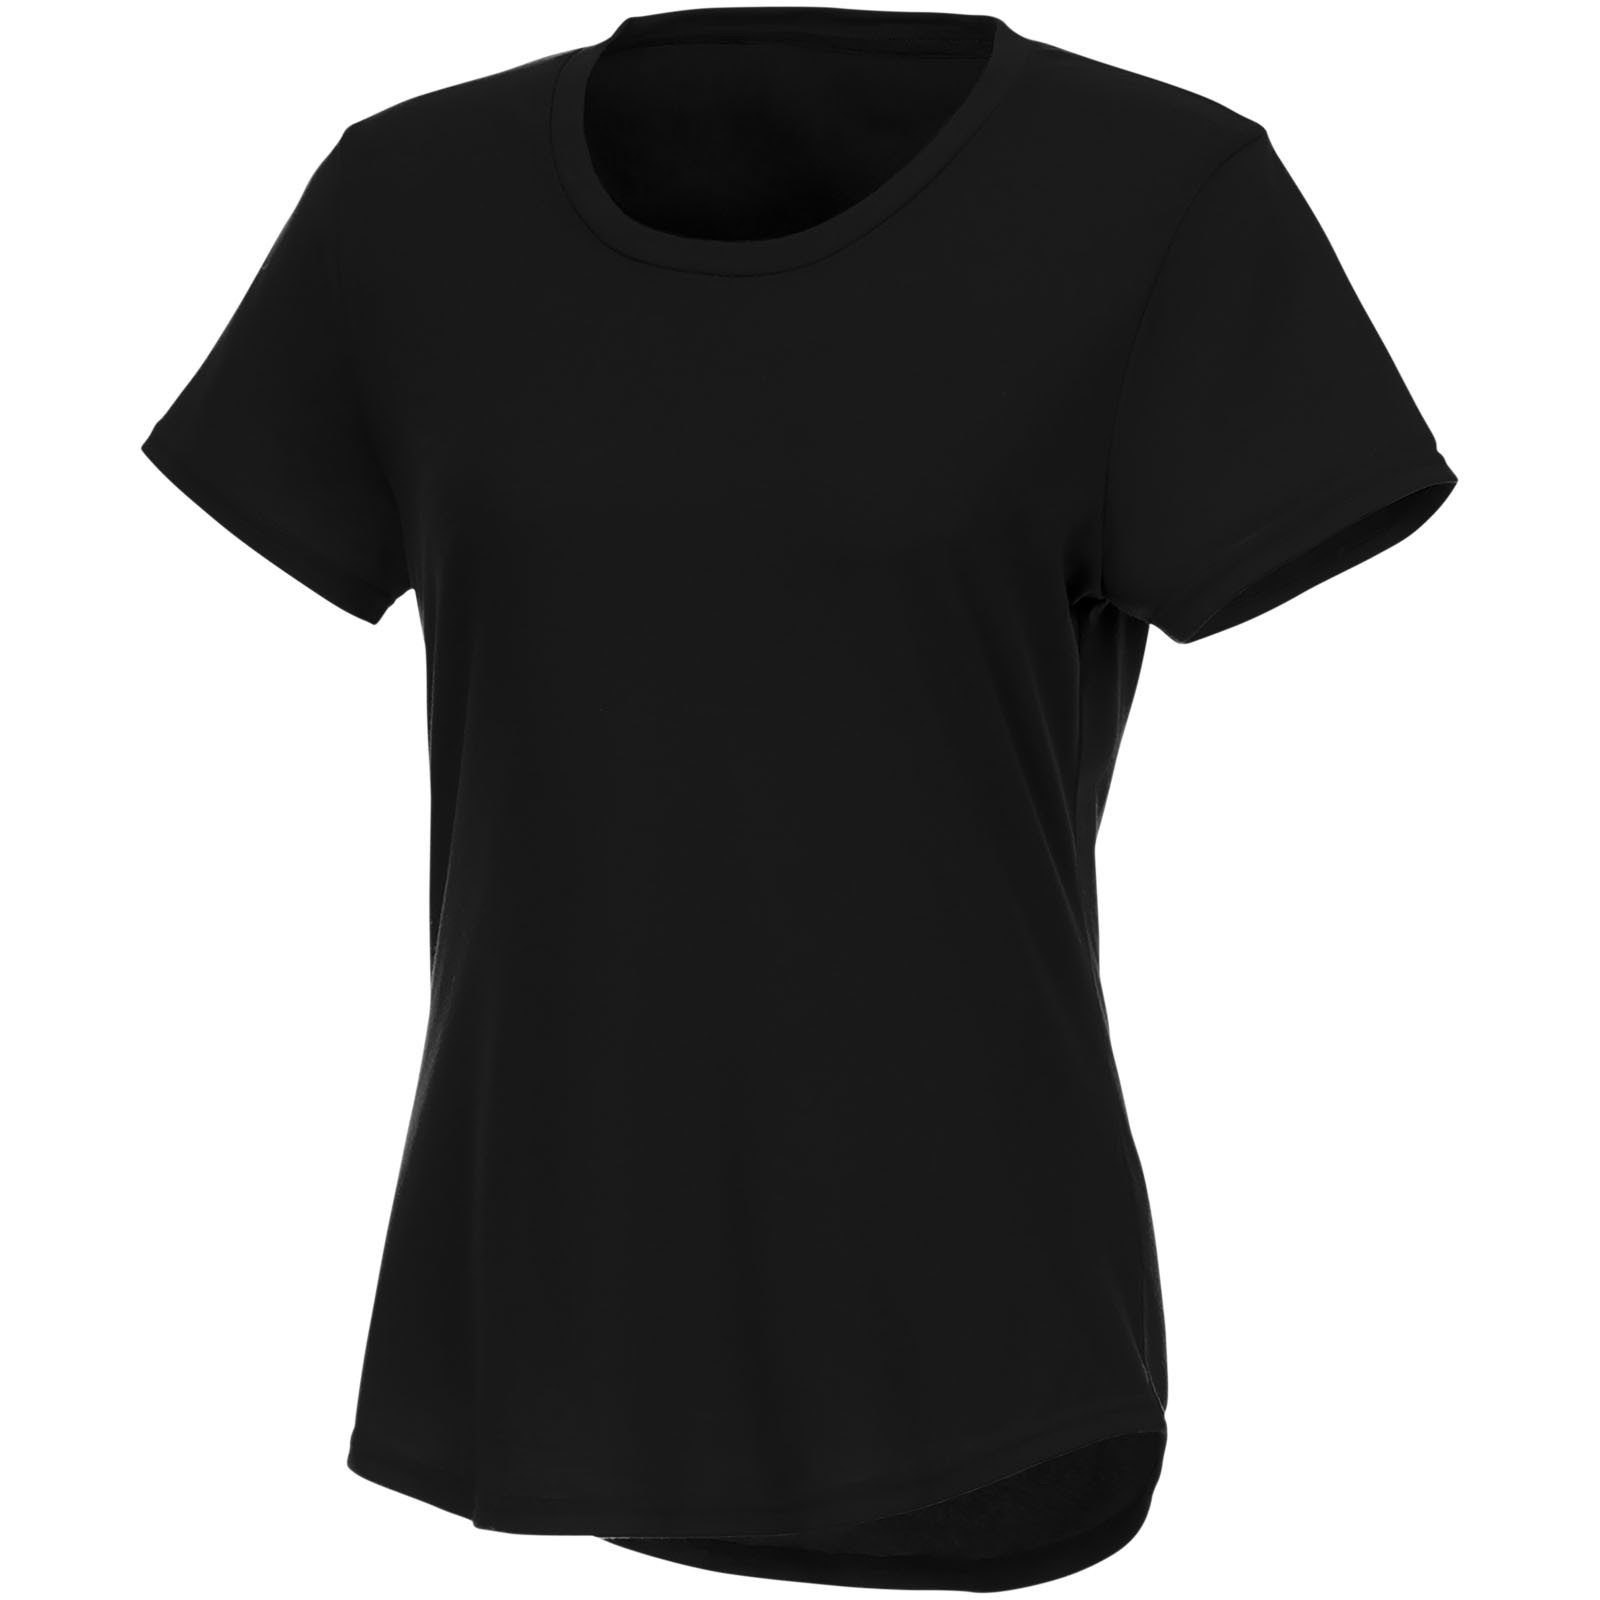 Camiseta de manga corta de material reciclado GRS para mujer "Jade" - Negro intenso / XS